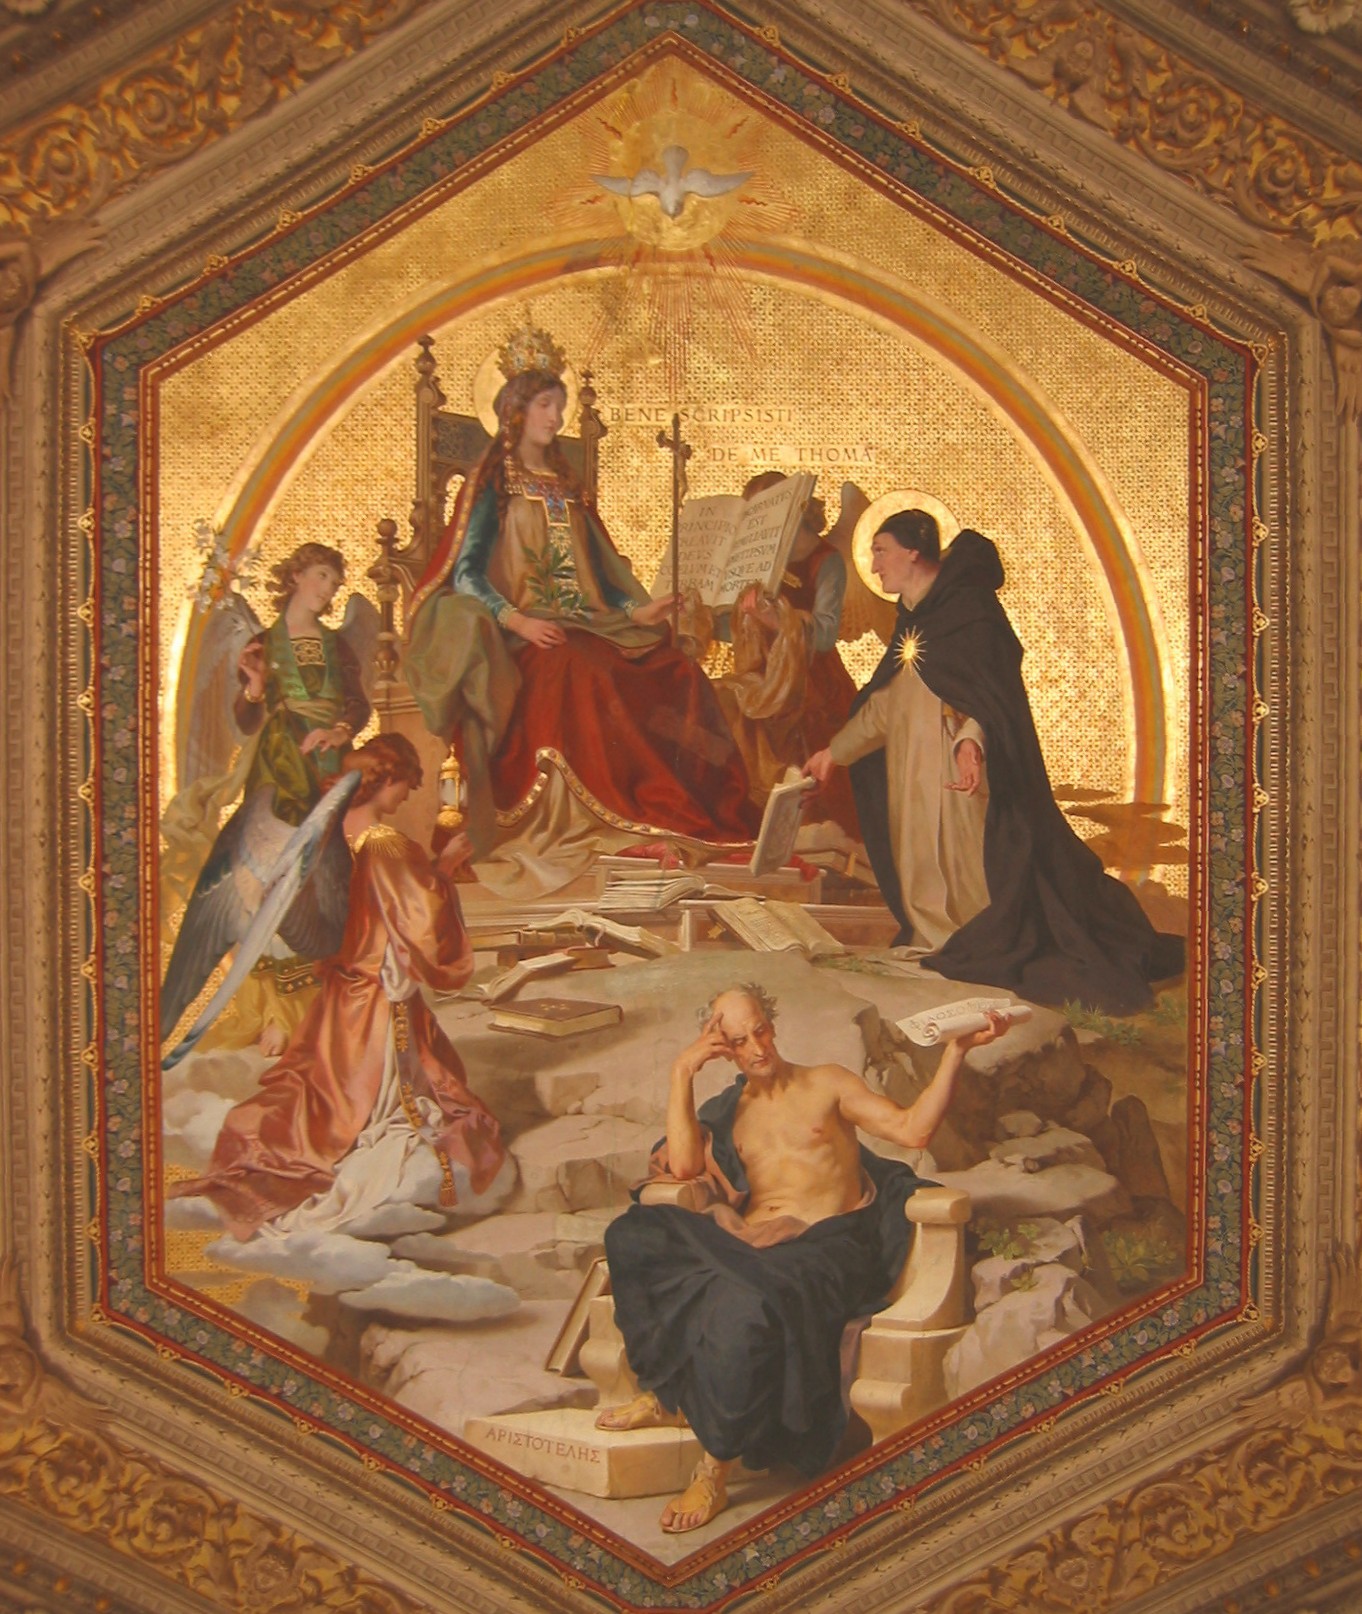 Gemälde: Thomas' inspiriertes Schreiben, Vatikanische Museen in Rom